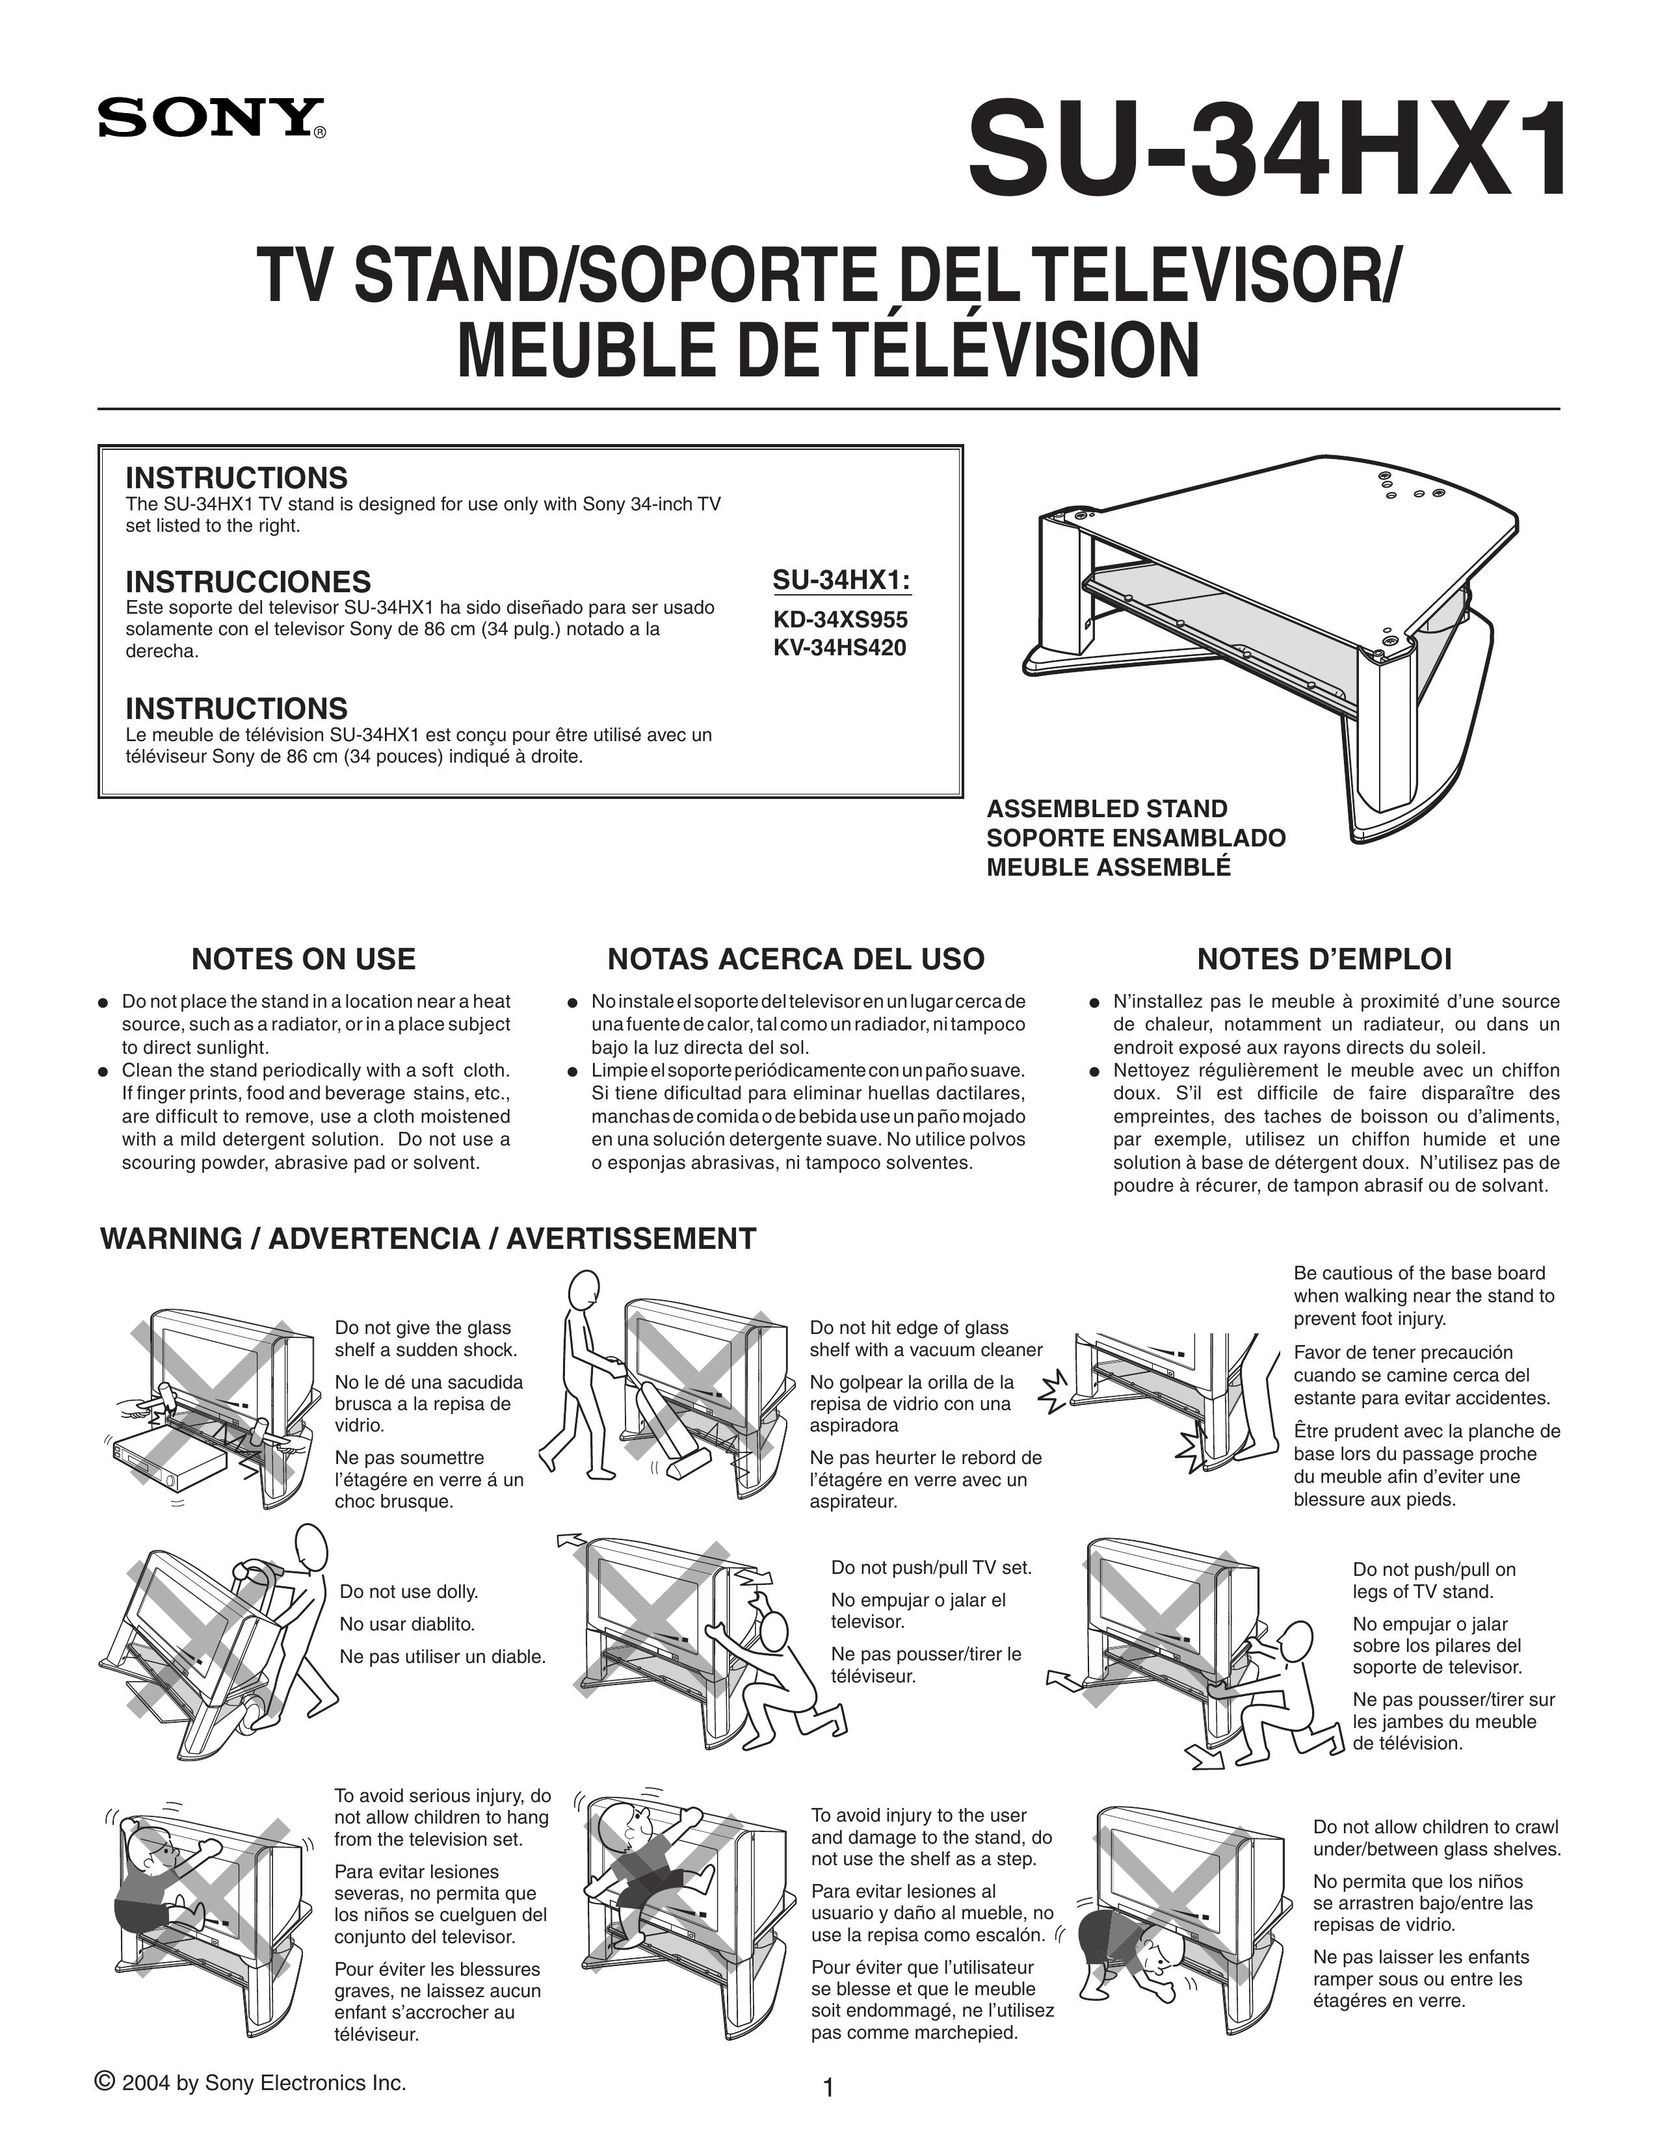 Sony SU-34HX1 TV Video Accessories User Manual